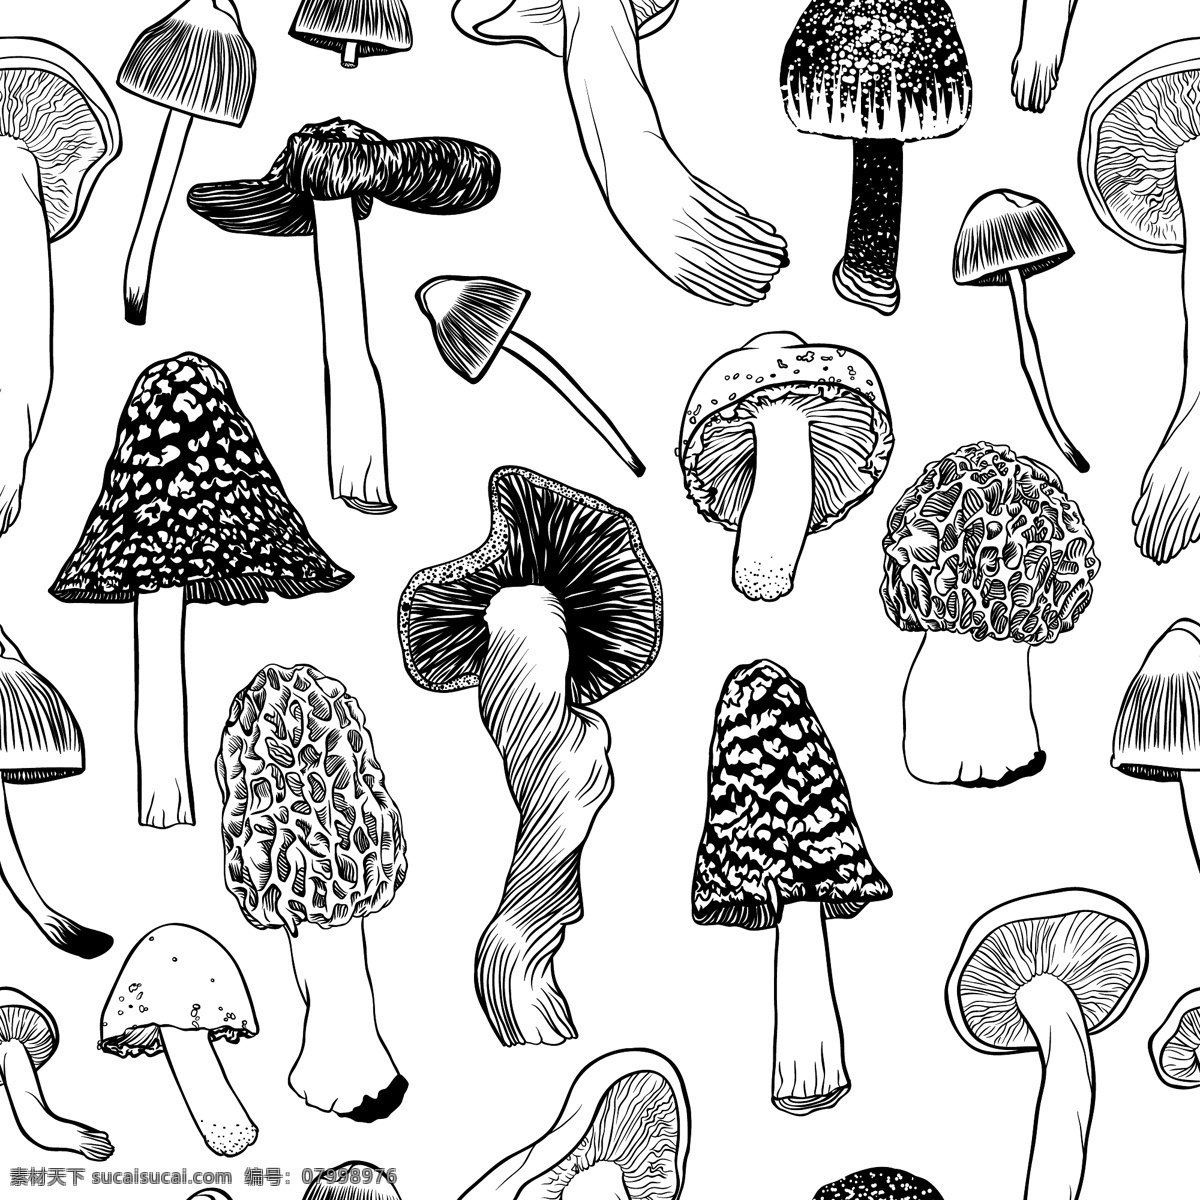 黑白 手绘 蘑菇 矢量 模板下载 线稿 蘑菇设计 矢量蘑菇 卡通蘑菇 餐饮美食 生活百科 矢量素材 白色